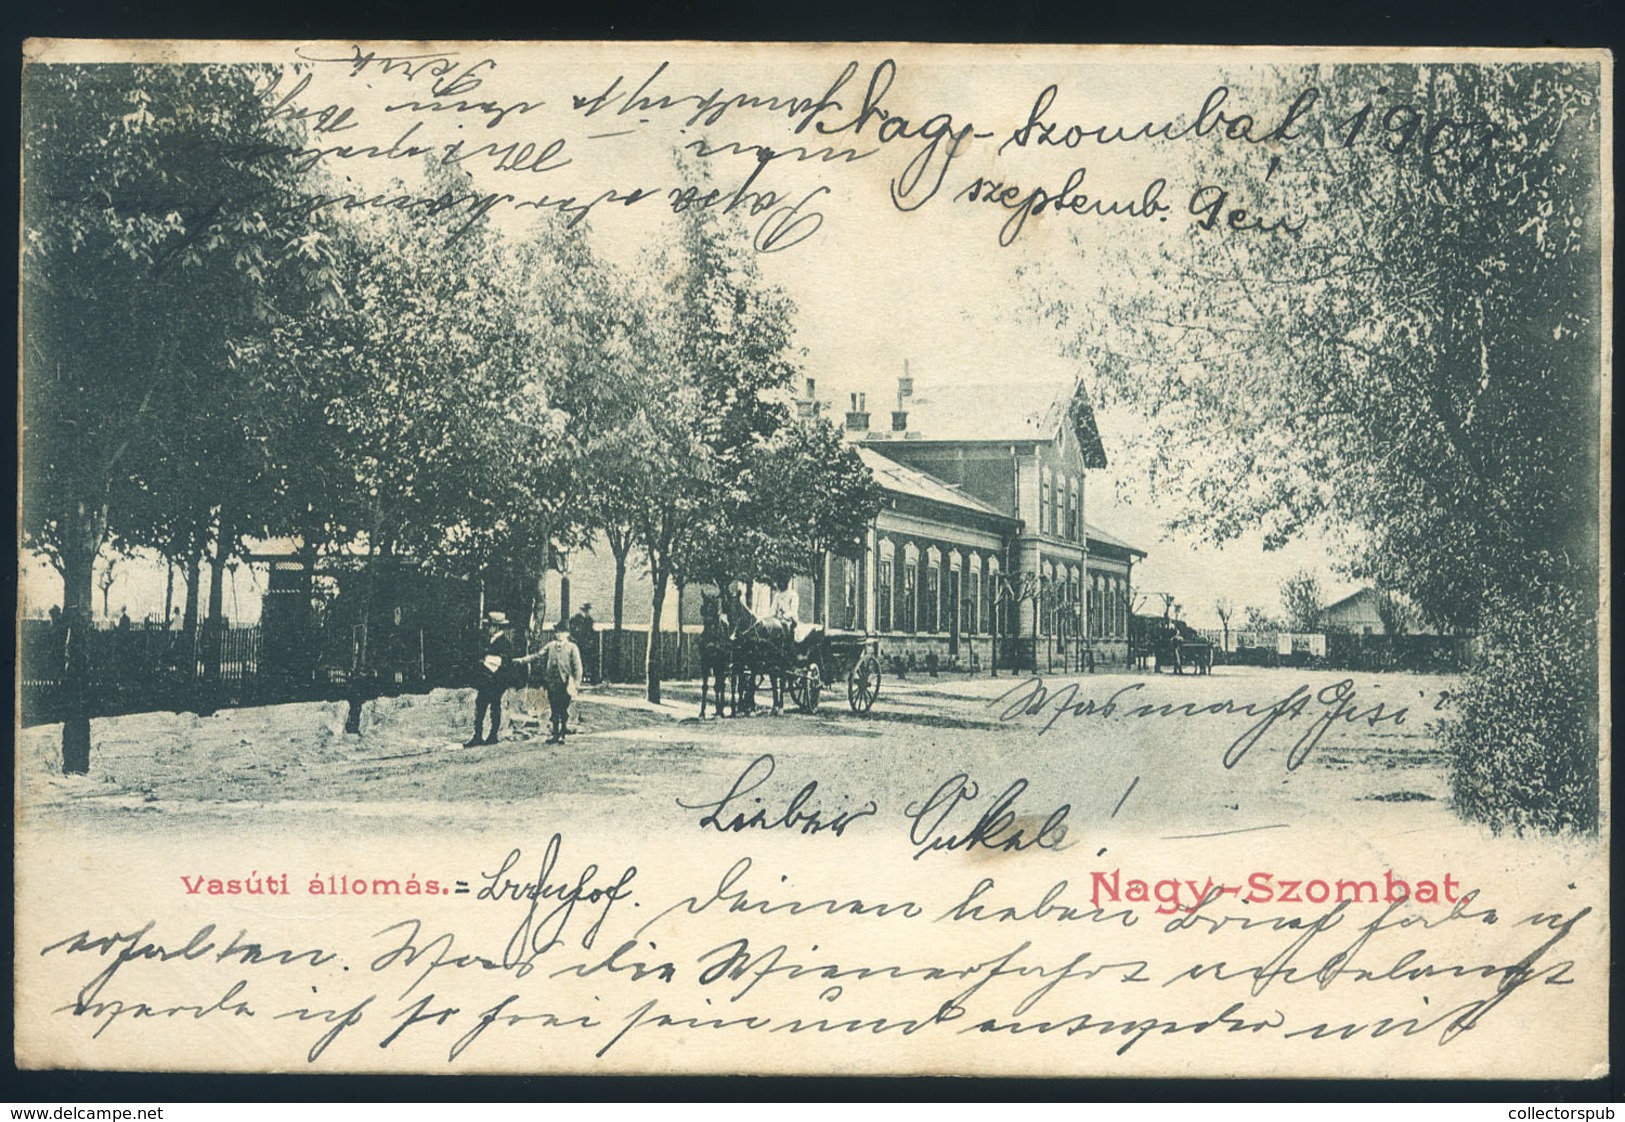 97278 NAGYSZOMBAT 1905. Vasútállomás, Régi Képeslap  /  NAGYSZOMBAT 1905 Train Station Vintage  Ppc HUNGARY / SLOVAKIA - Hungary